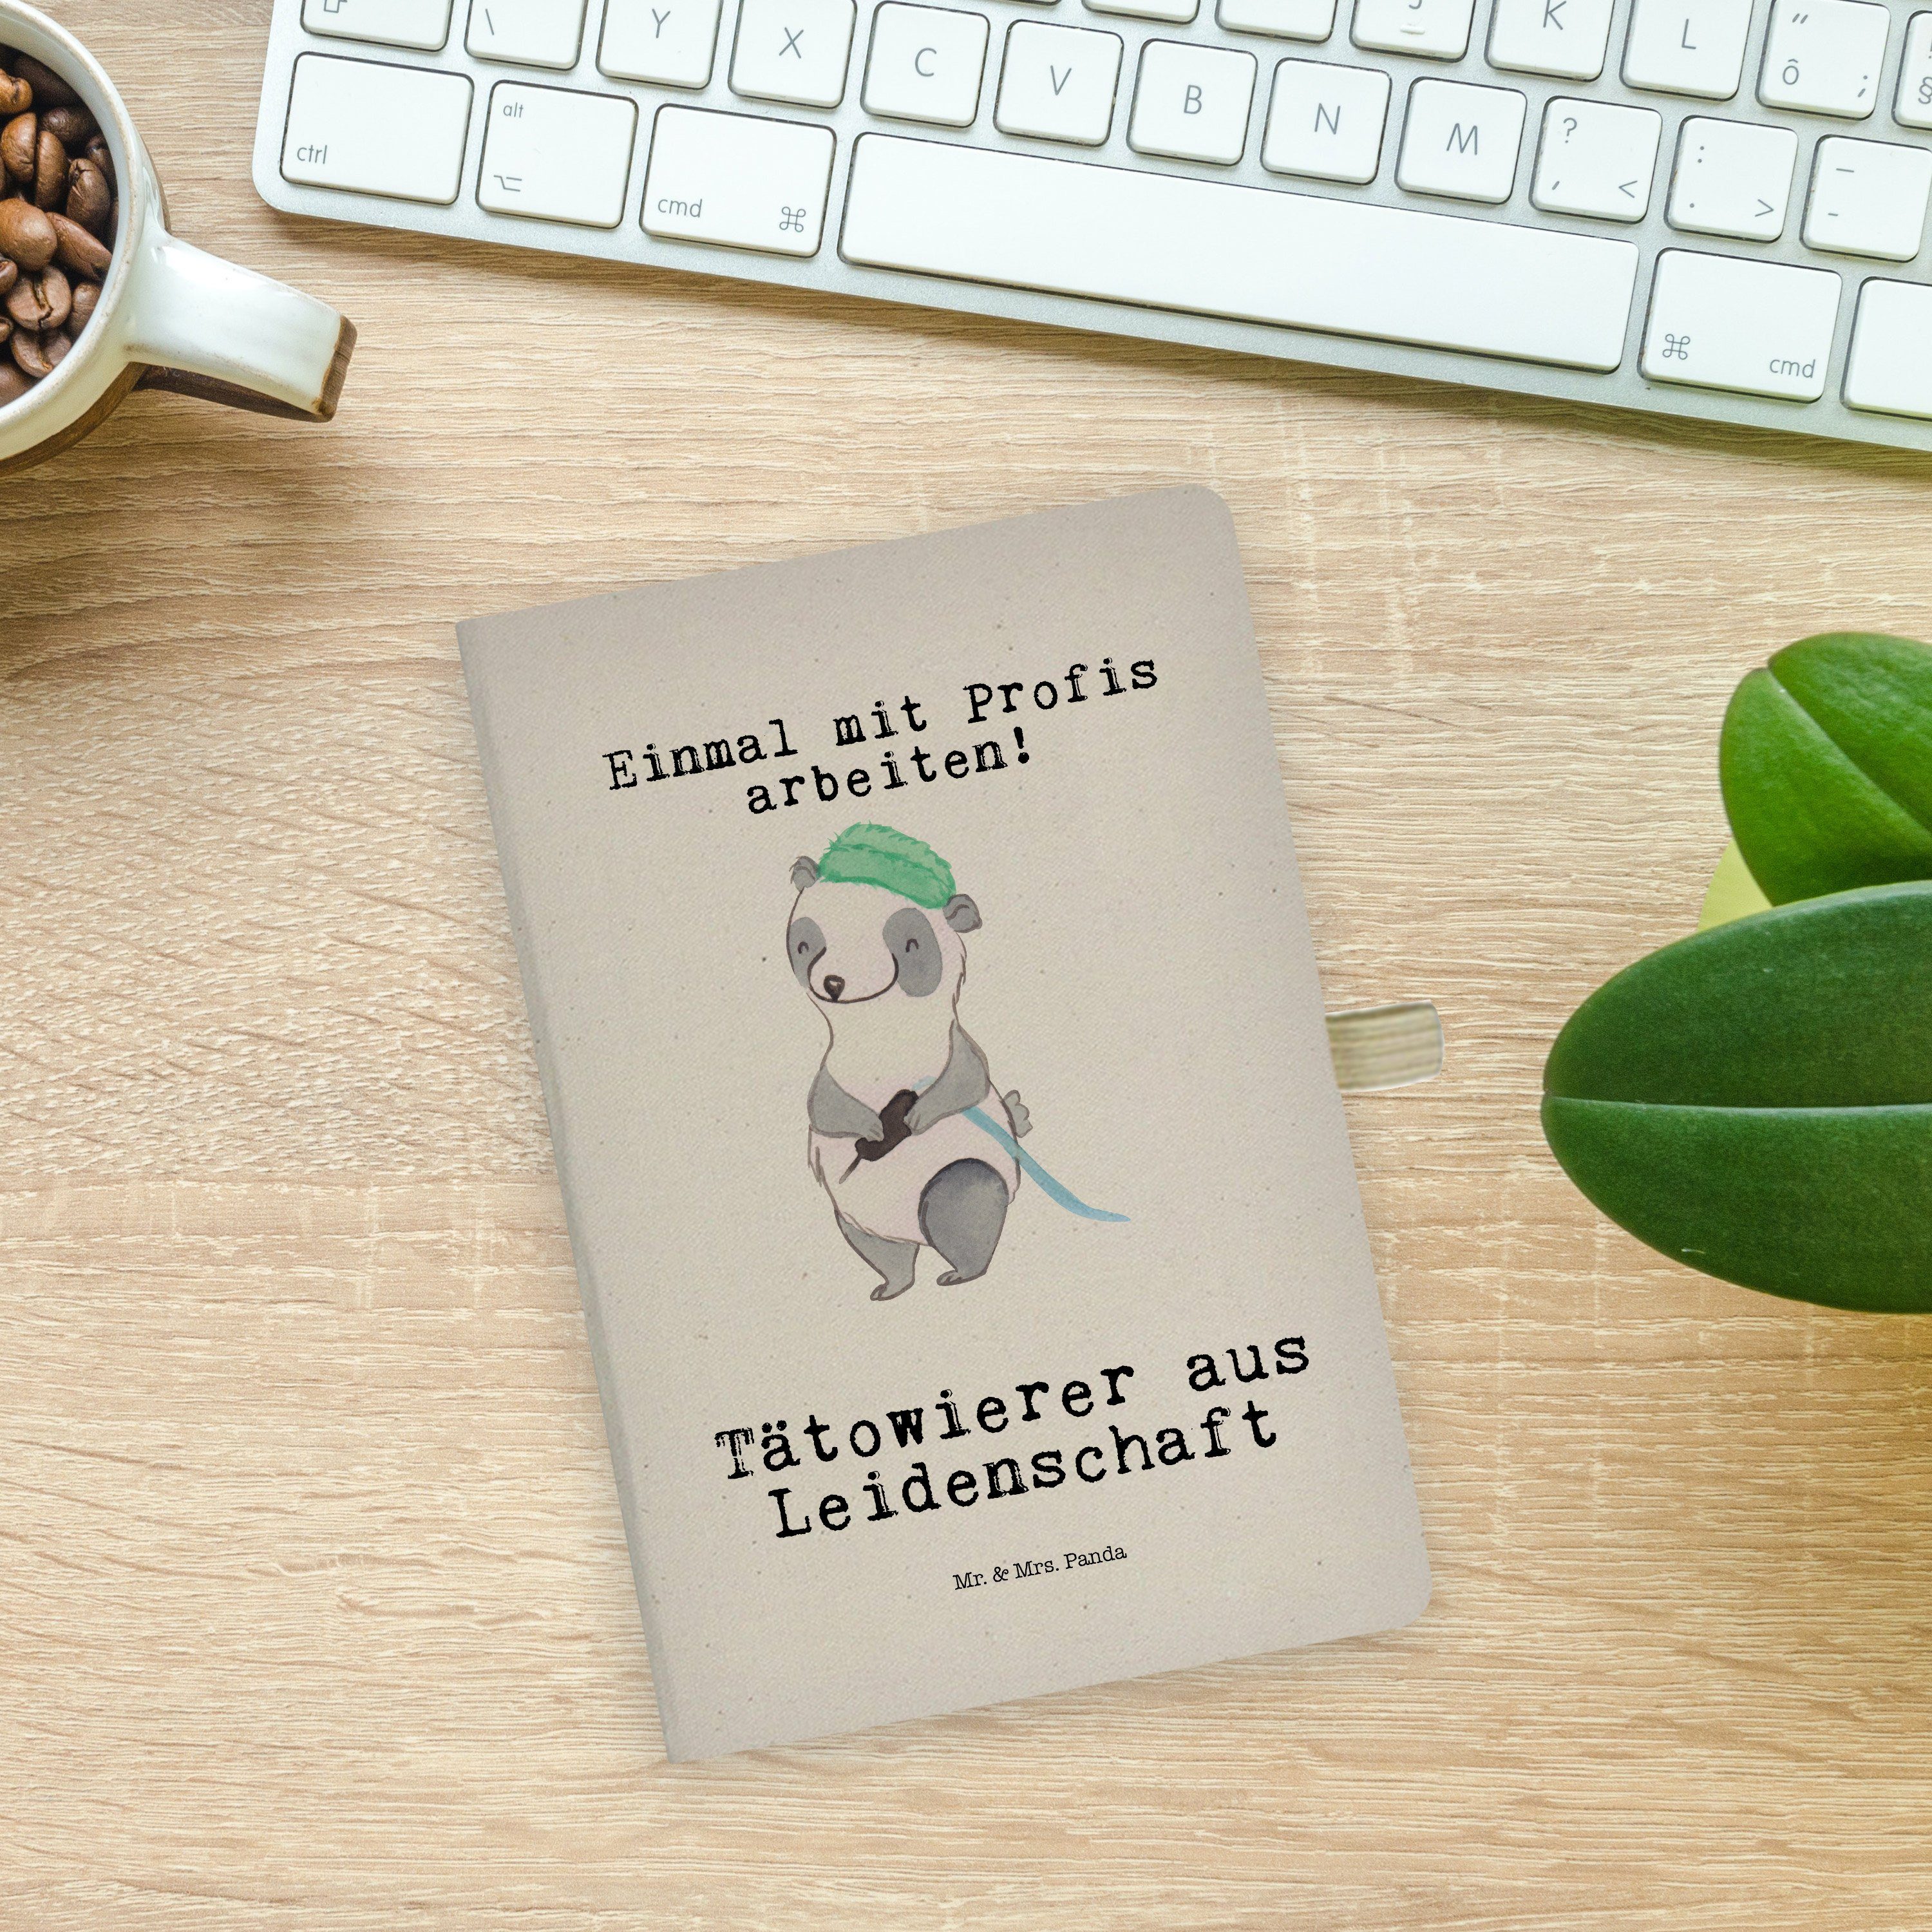 & Leidenschaft aus Panda & Notizbuch - Abschied Geschenk, Mr. Panda - Transparent Tätowierer Mrs. Mr. Mrs. Beruf,